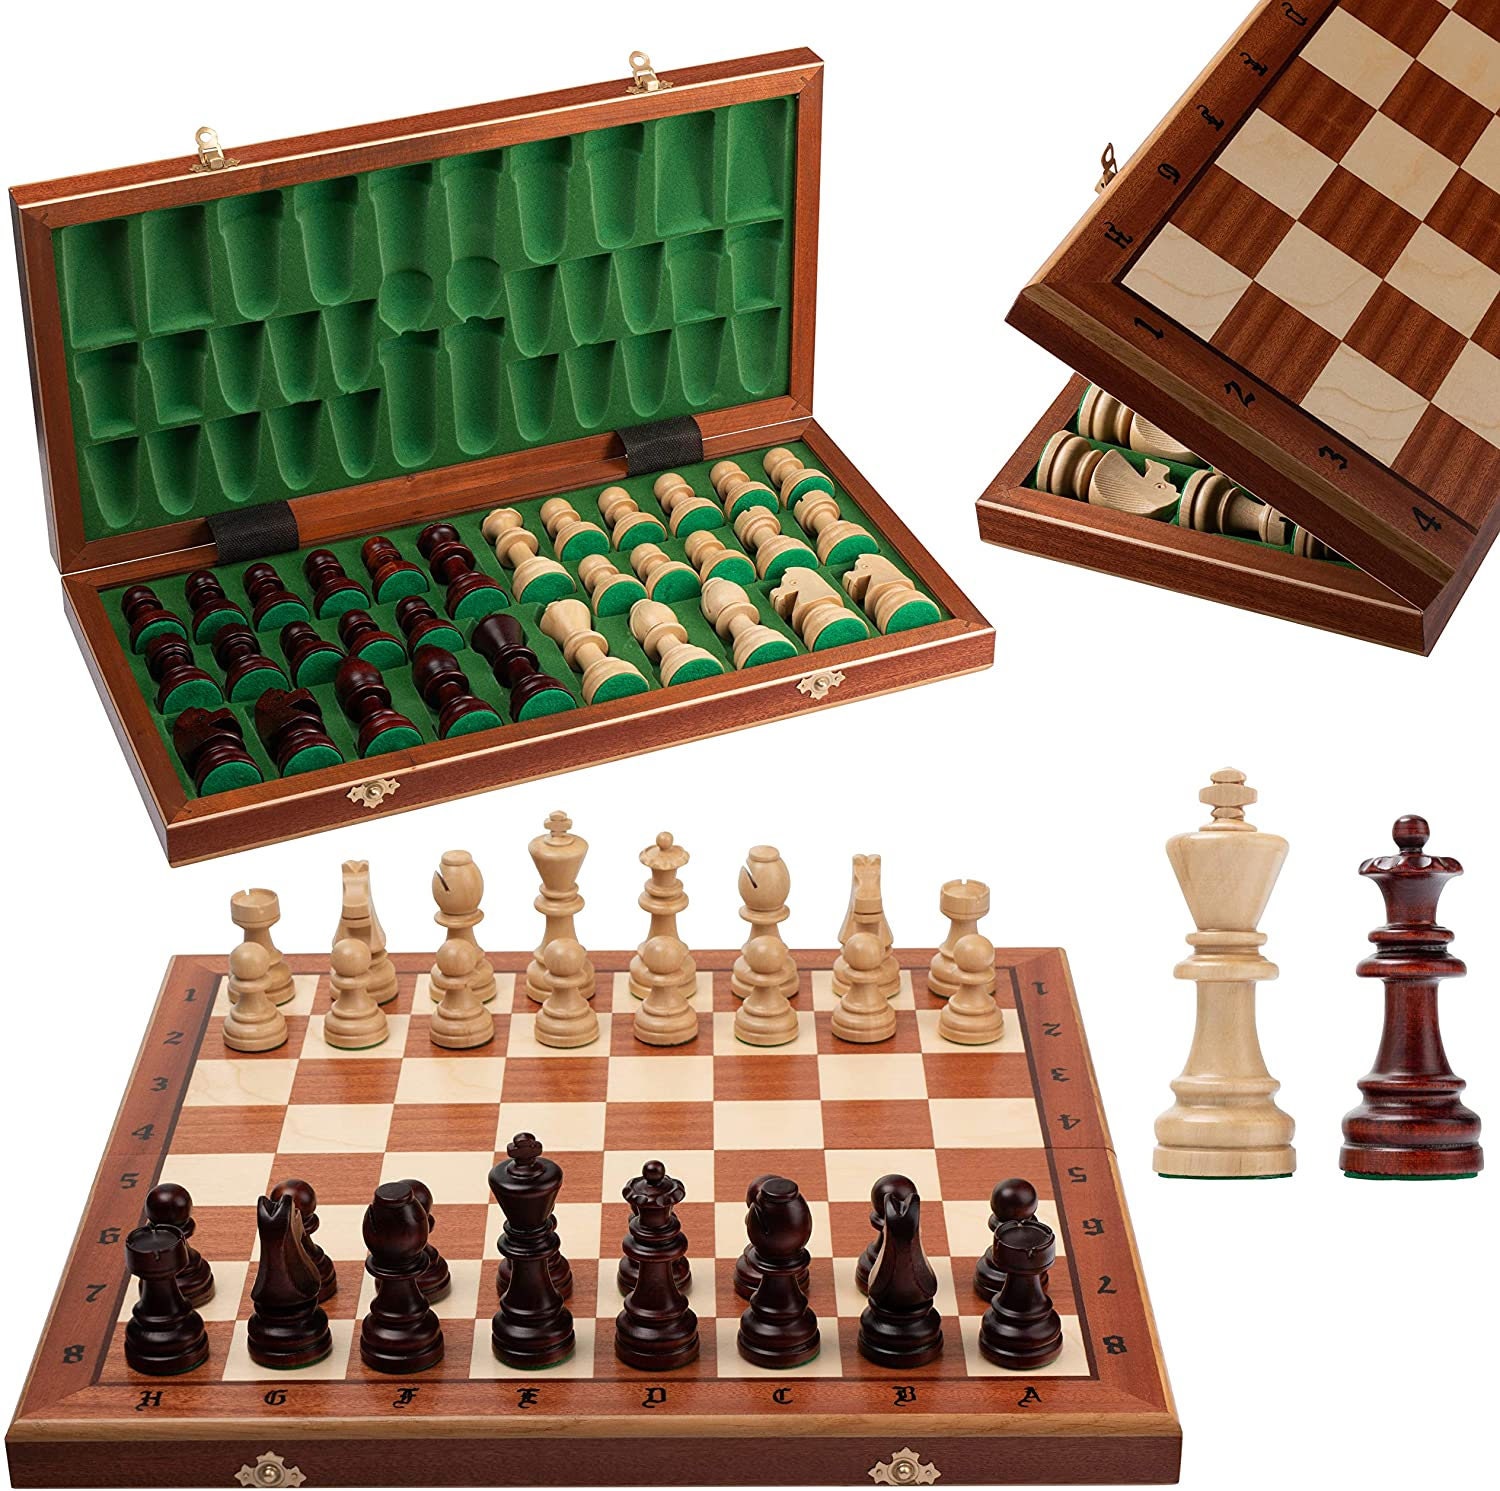 Golden King Und Queen Schach Stück Konzept Für Konkurrenz Und